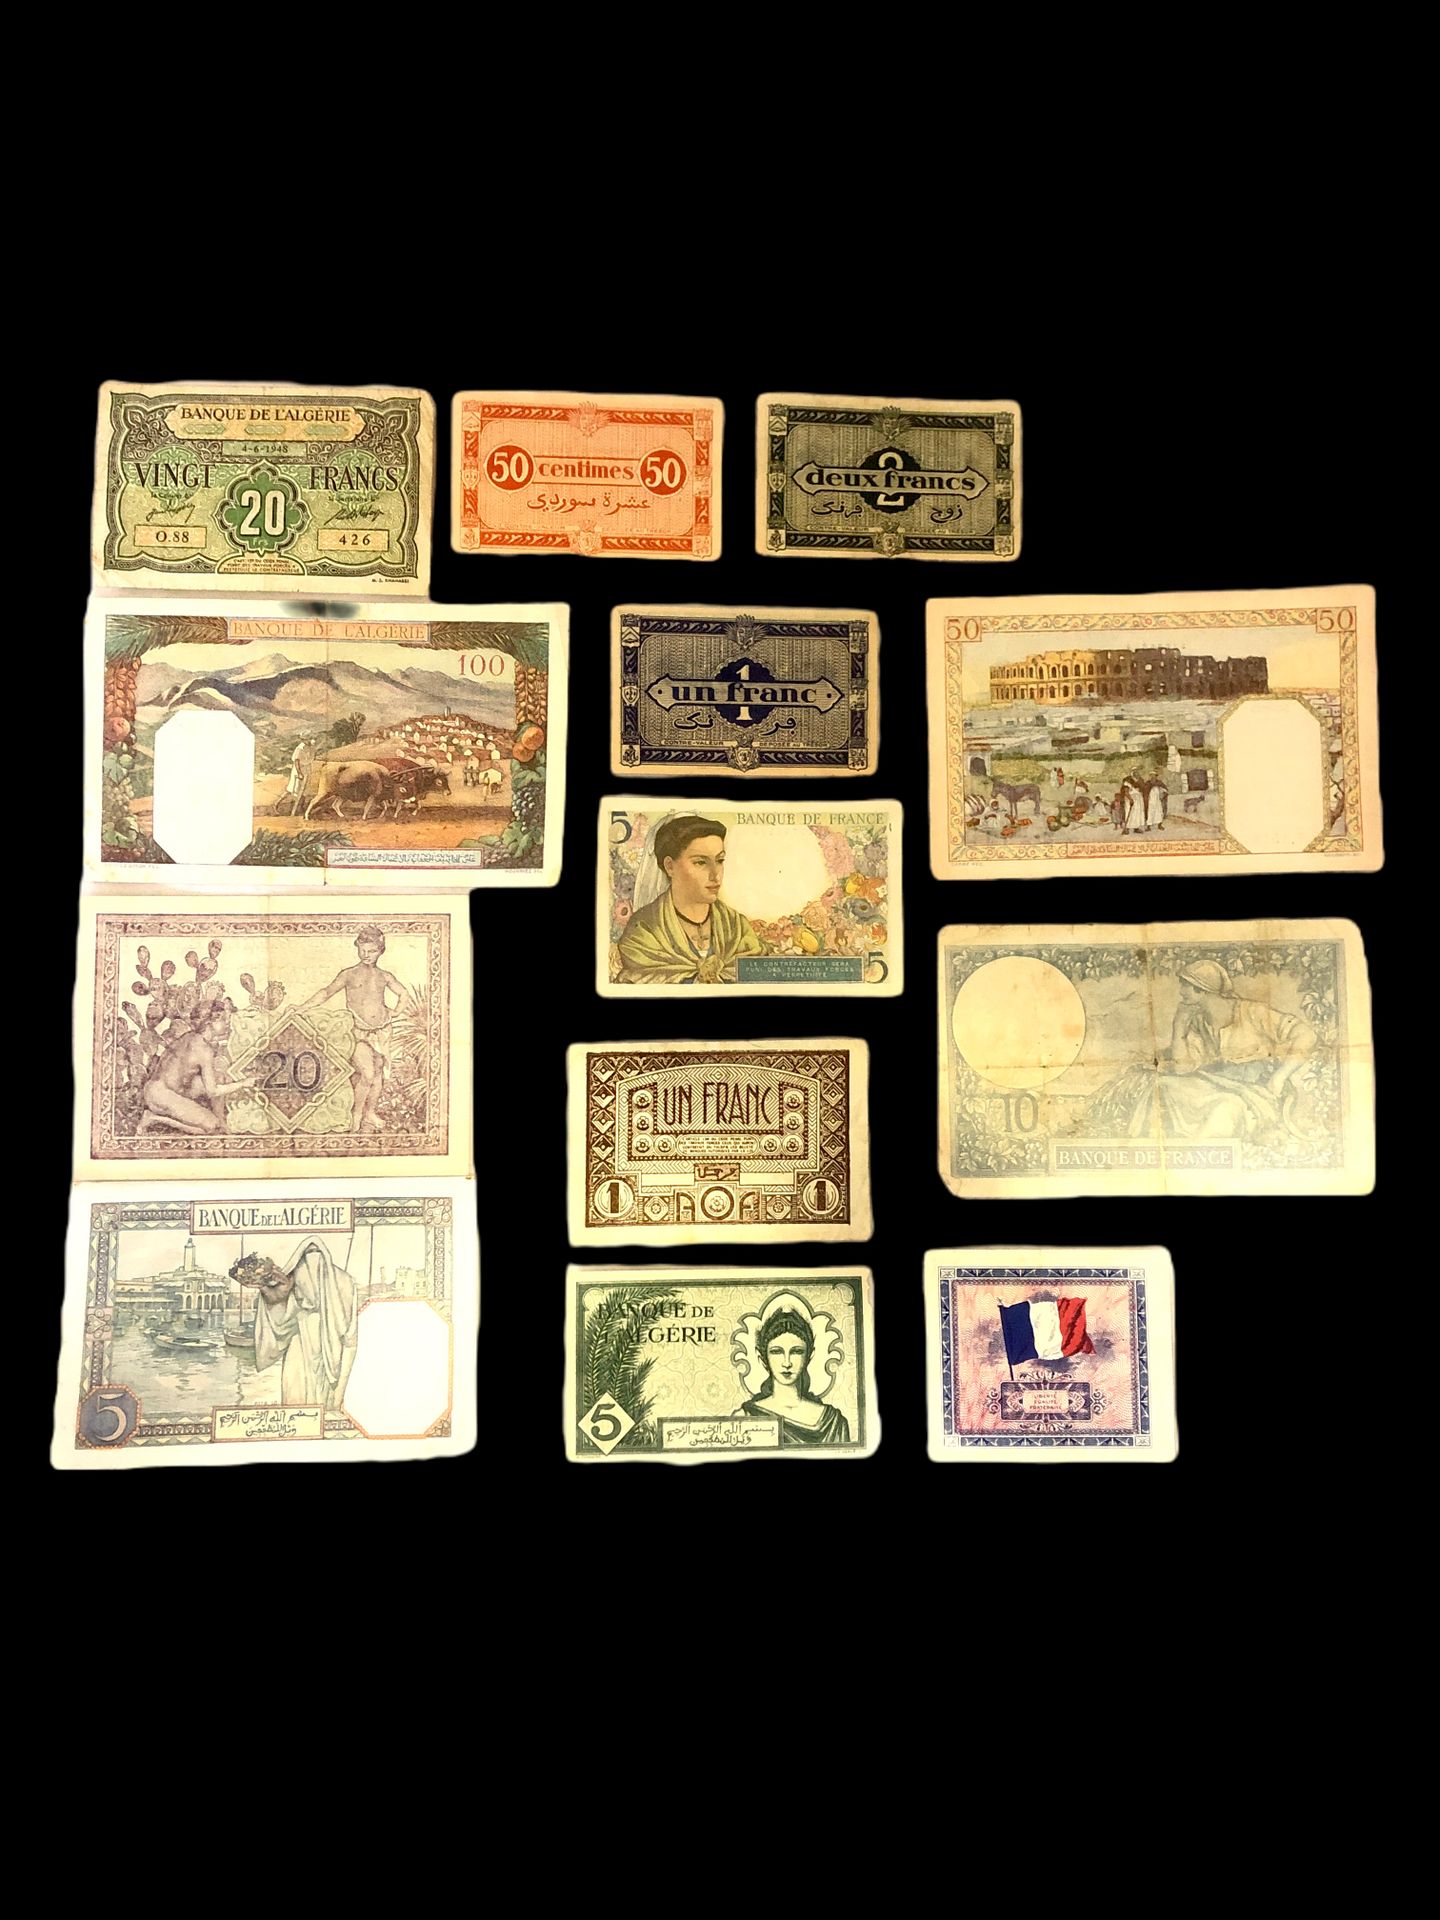 Null 套装的24张纸币包括:

- X8 阿尔及利亚银行 5法郎 1941年。

- 阿尔及利亚银行1944年5法郎。

- X3 阿尔及利亚银行20法郎 &hellip;